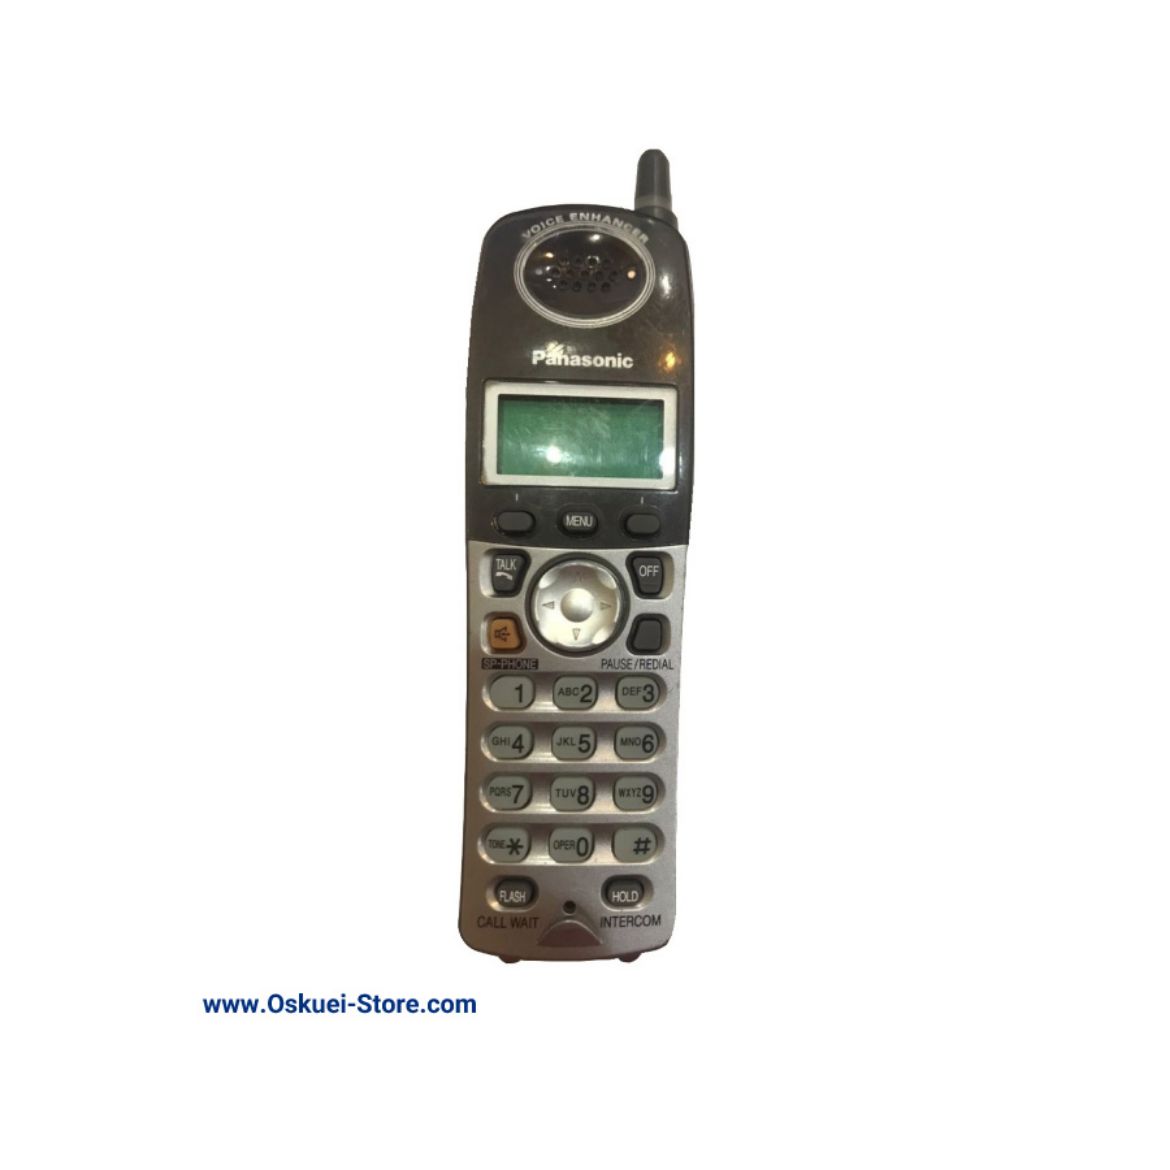 Panasonic KX-TGA224 Cordless Telephone